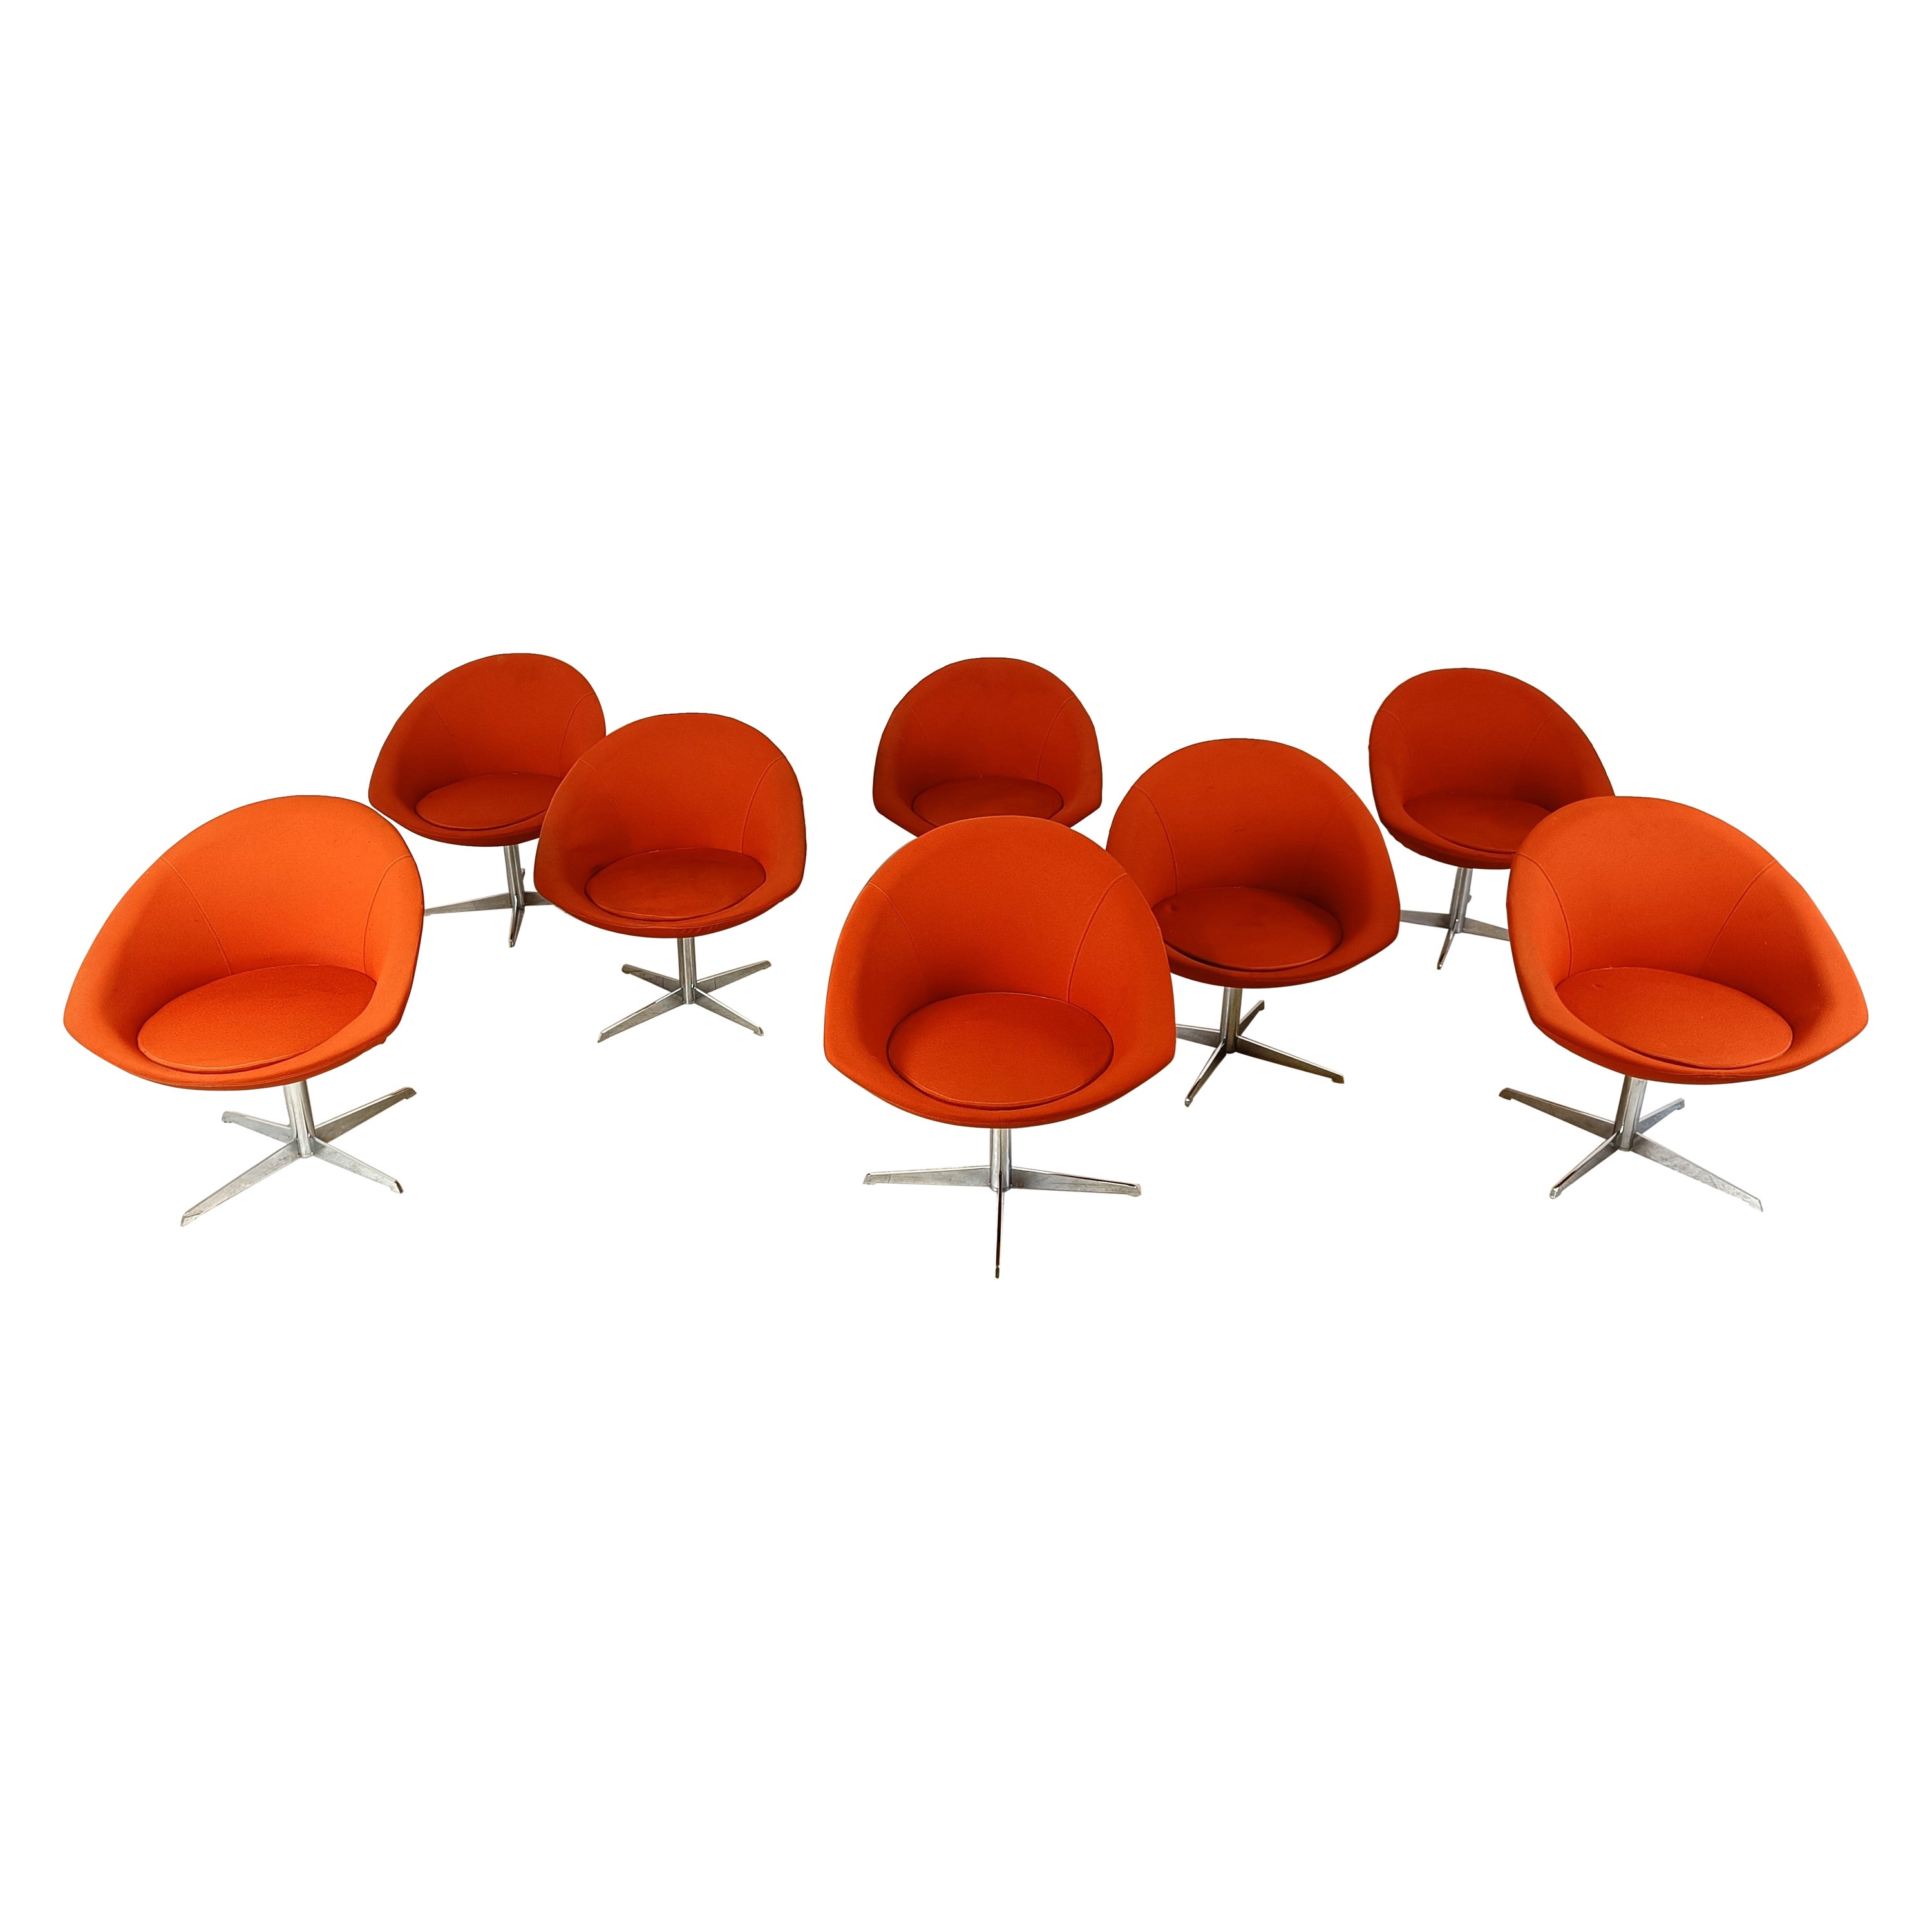 Orange swivel chairs by Benjo, 1990s